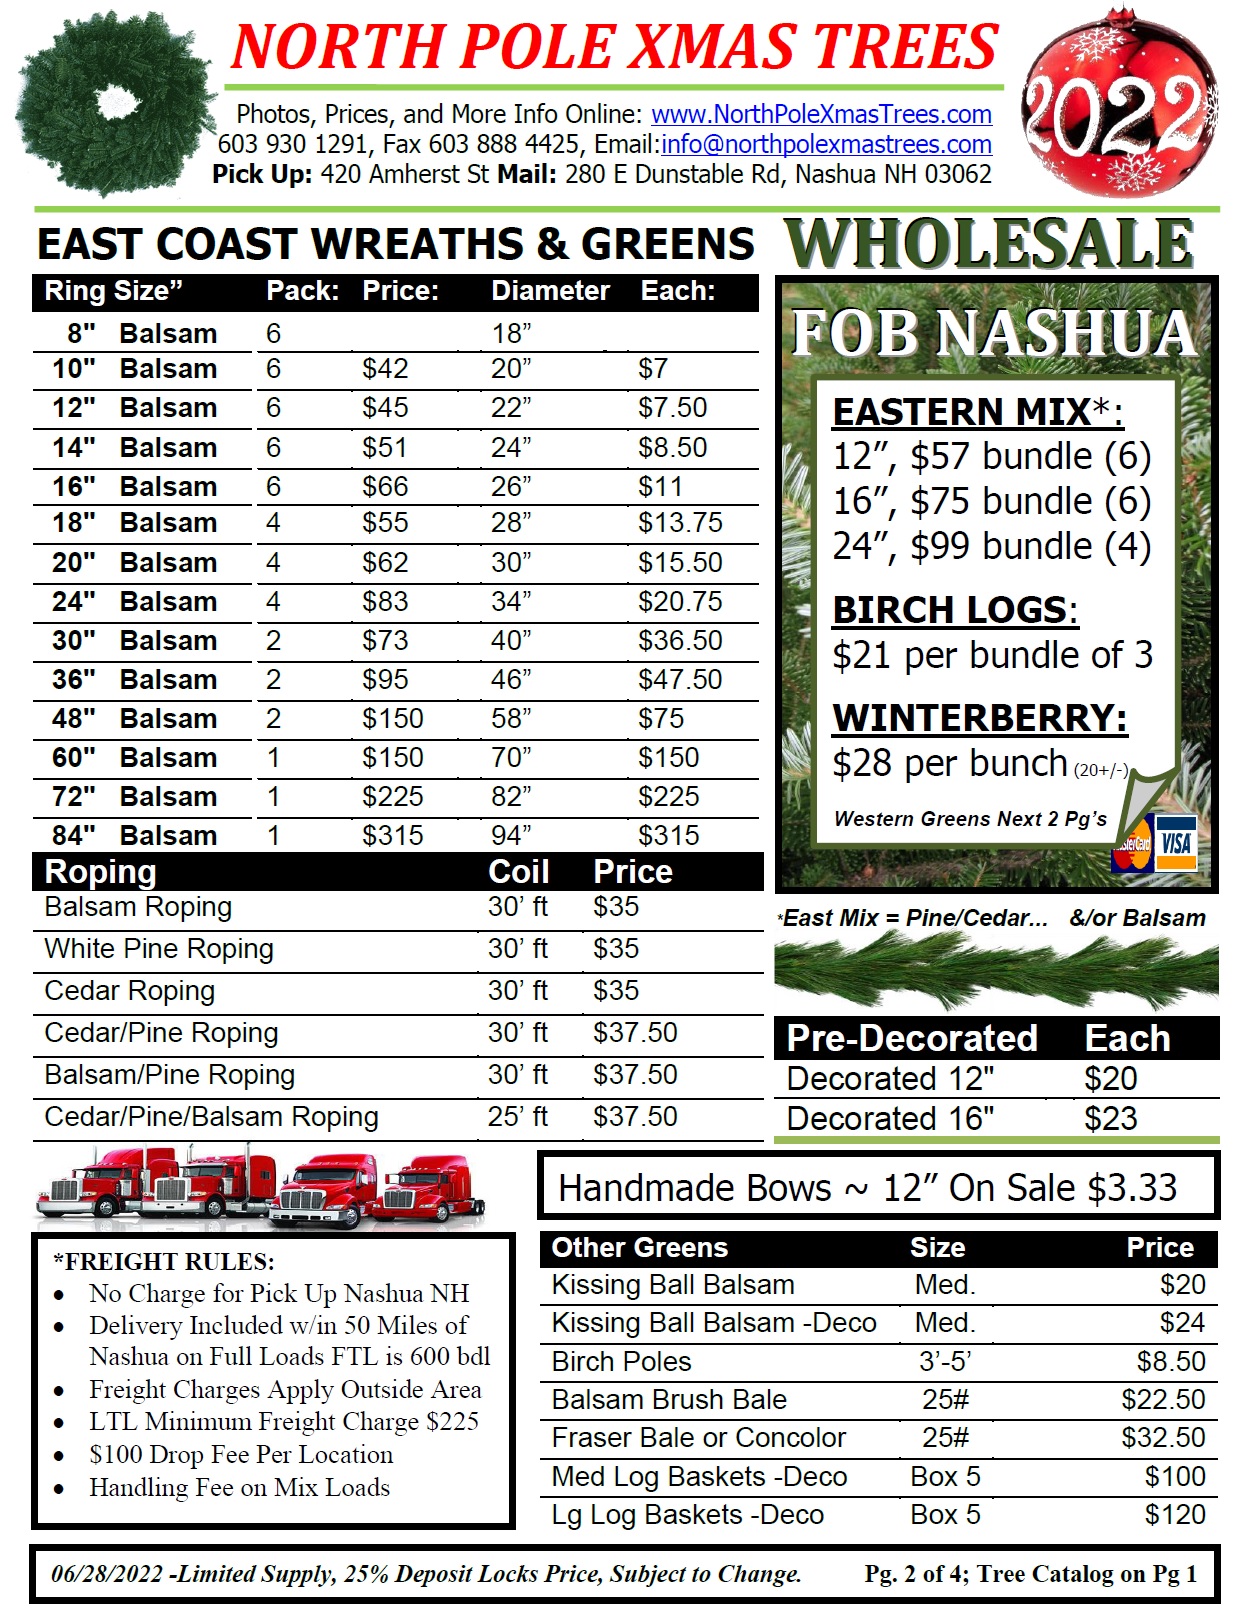 Wholesale Wreath Prices 2022